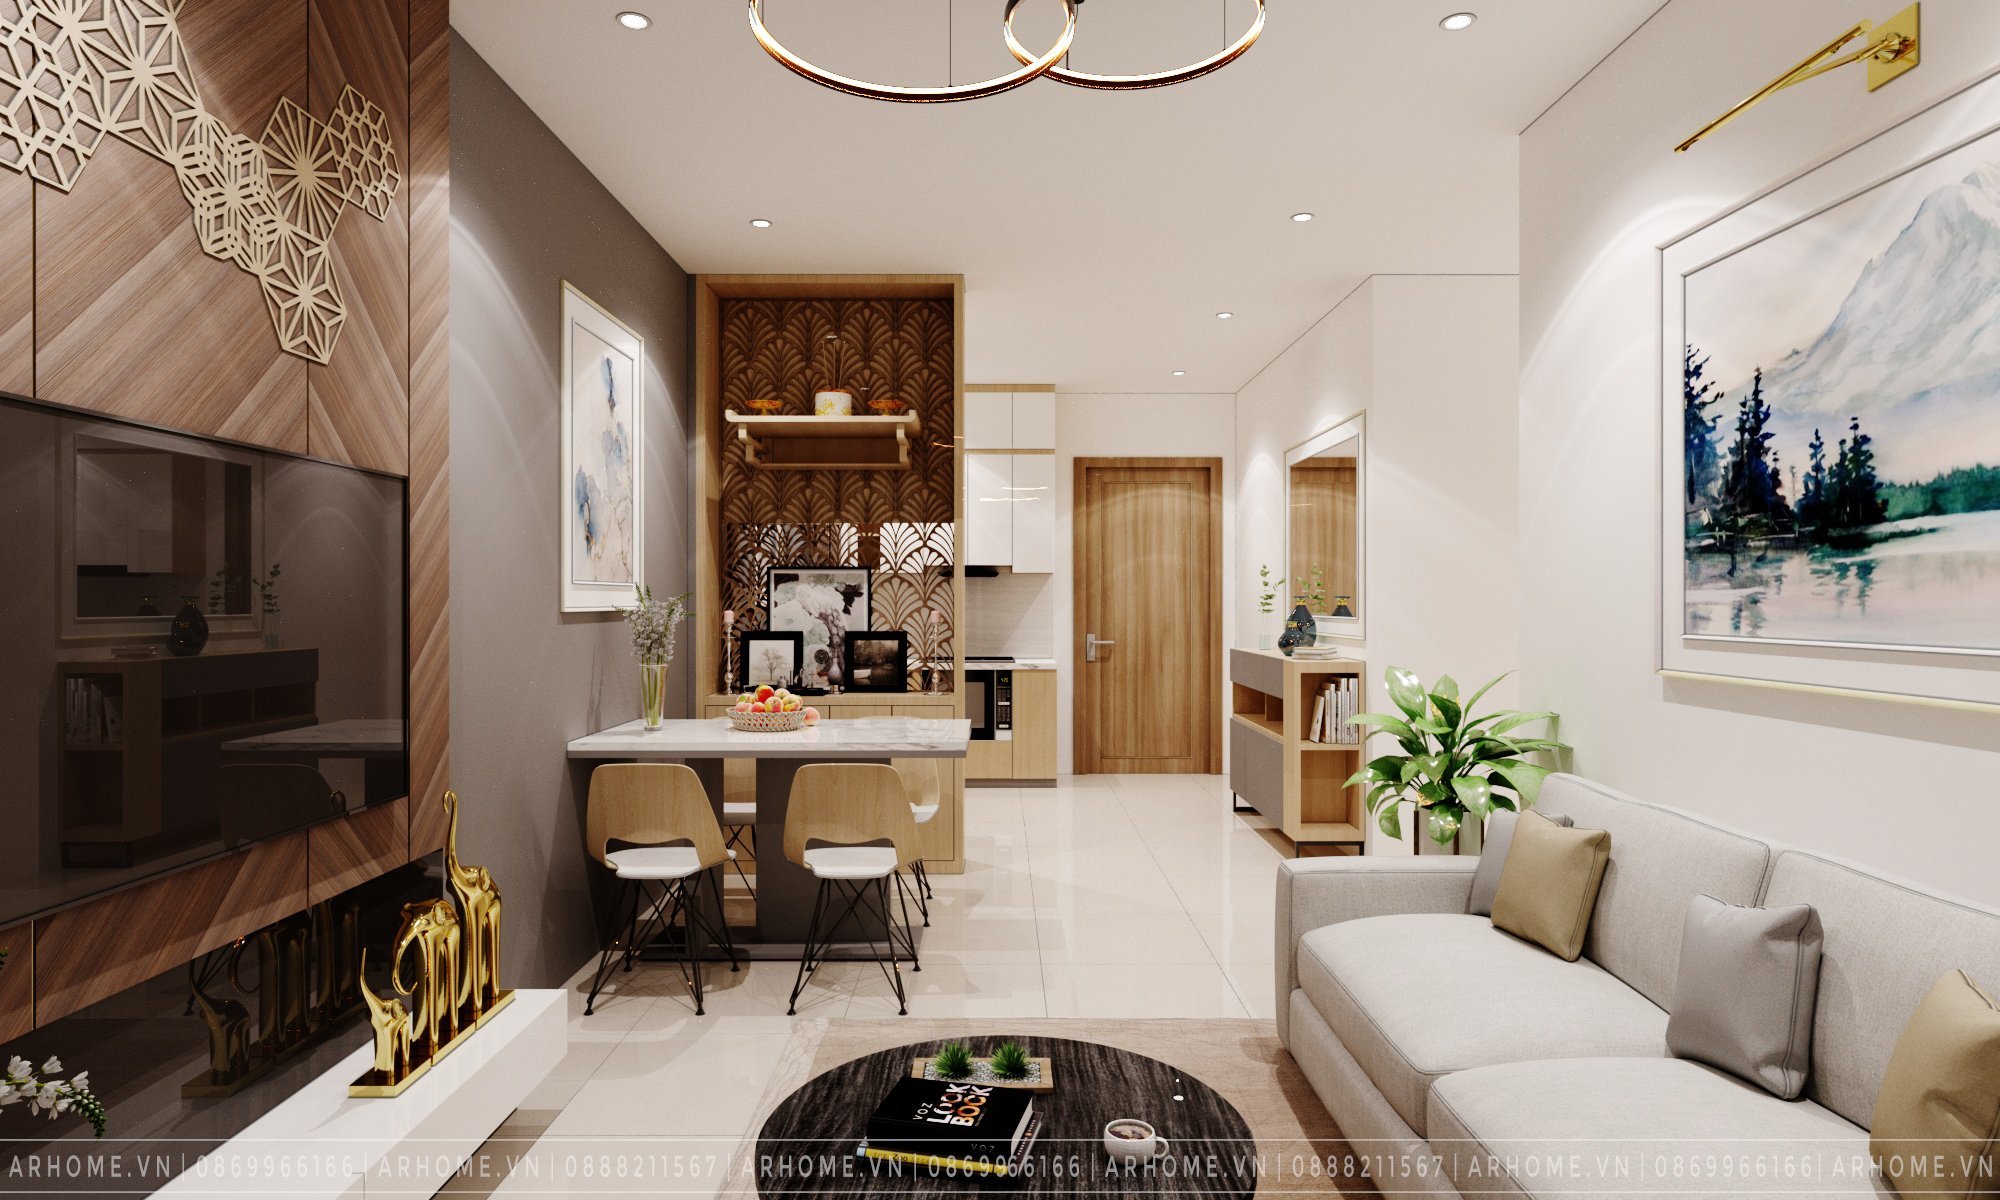 Thiết kế nội thất Chung Cư tại Hà Nội Thiết kế nội thất căn hộ 2 phòng ngủ 55m2 Vinhomes Smart City 1609236483 2